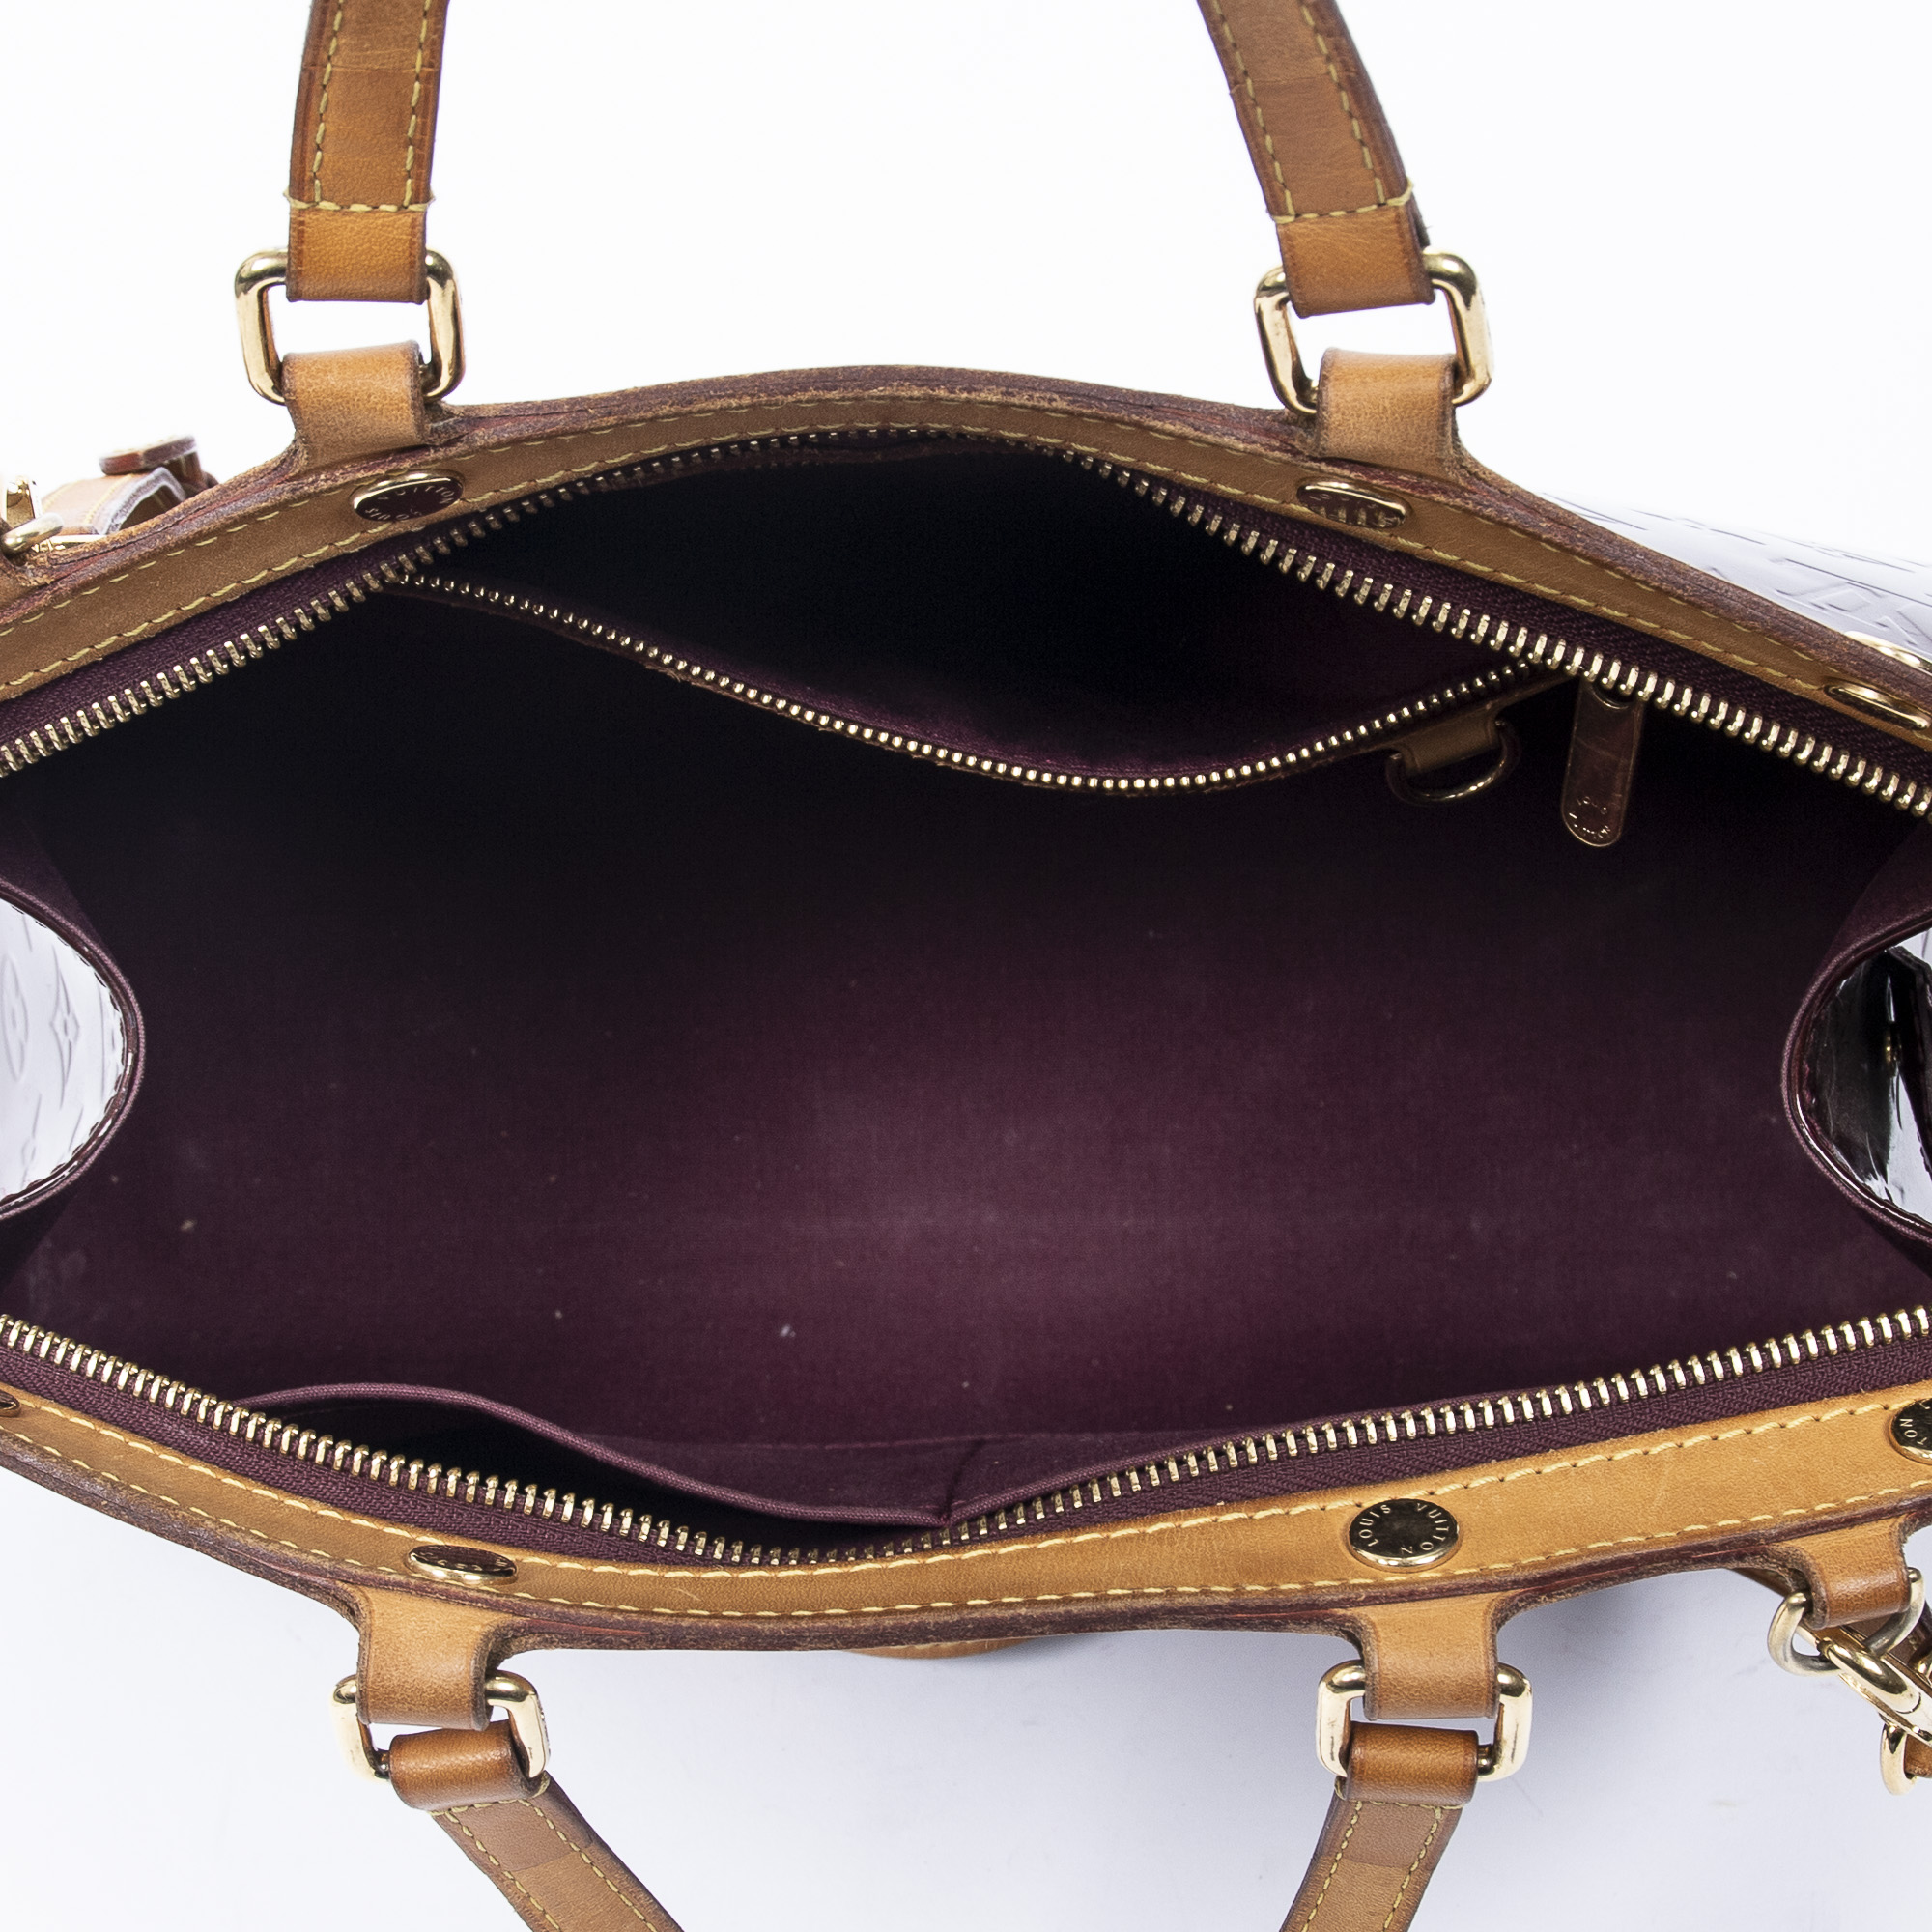 Sold at Auction: A LOUIS VUITTON VERNIS BREA GM ROUGE FAUVISTE BAG